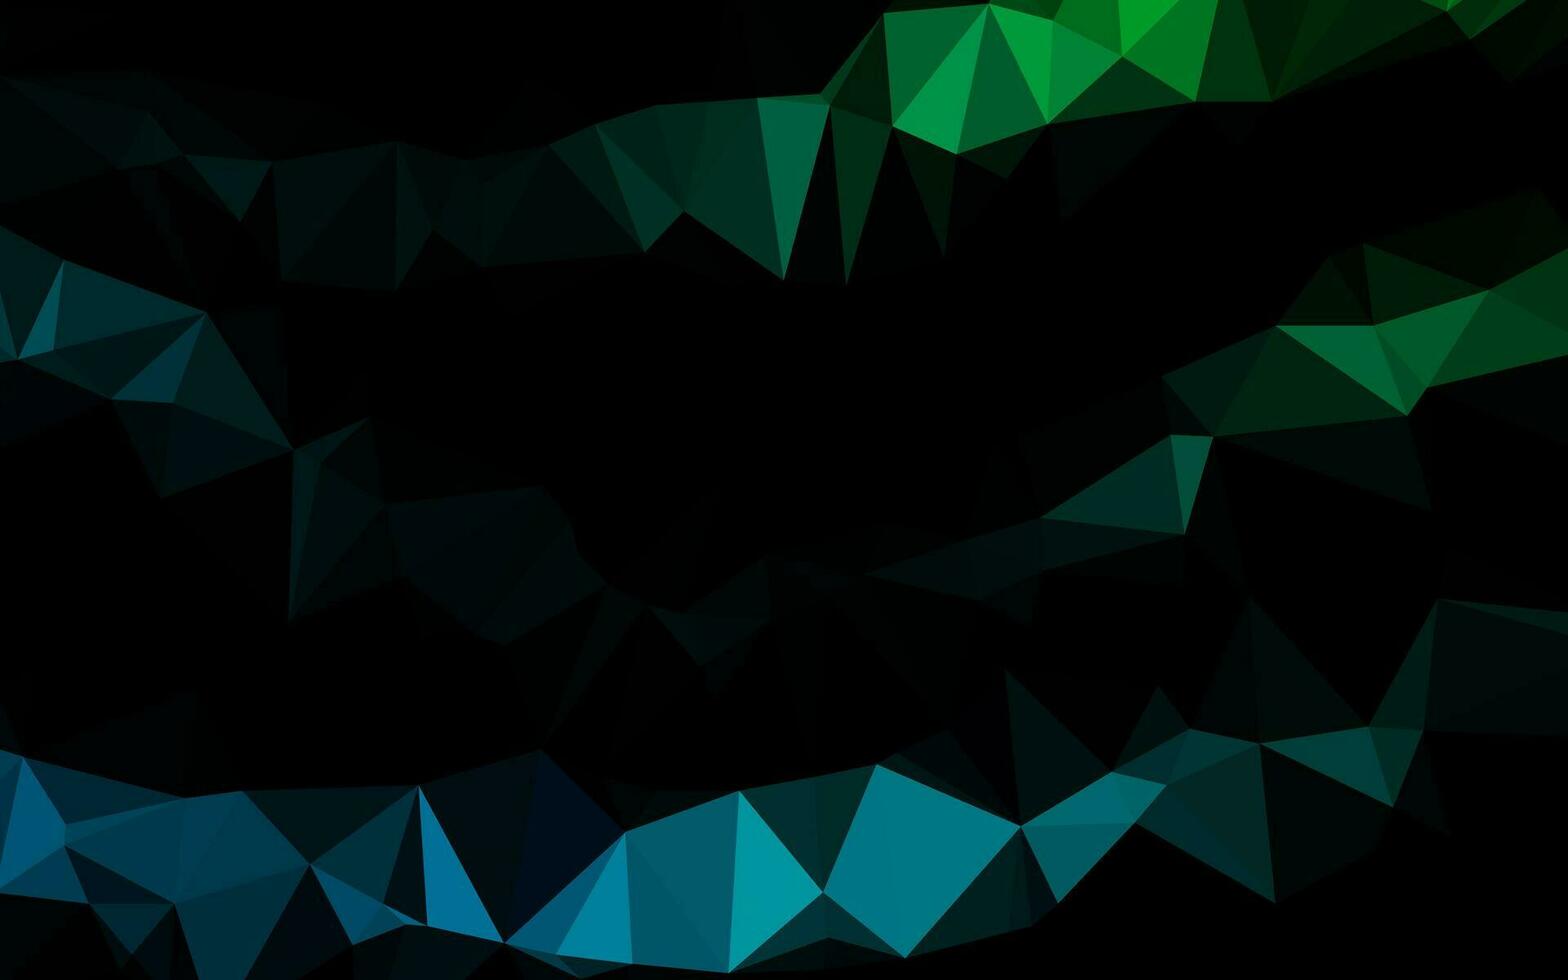 vetor azul escuro e verde brilhante padrão triangular.